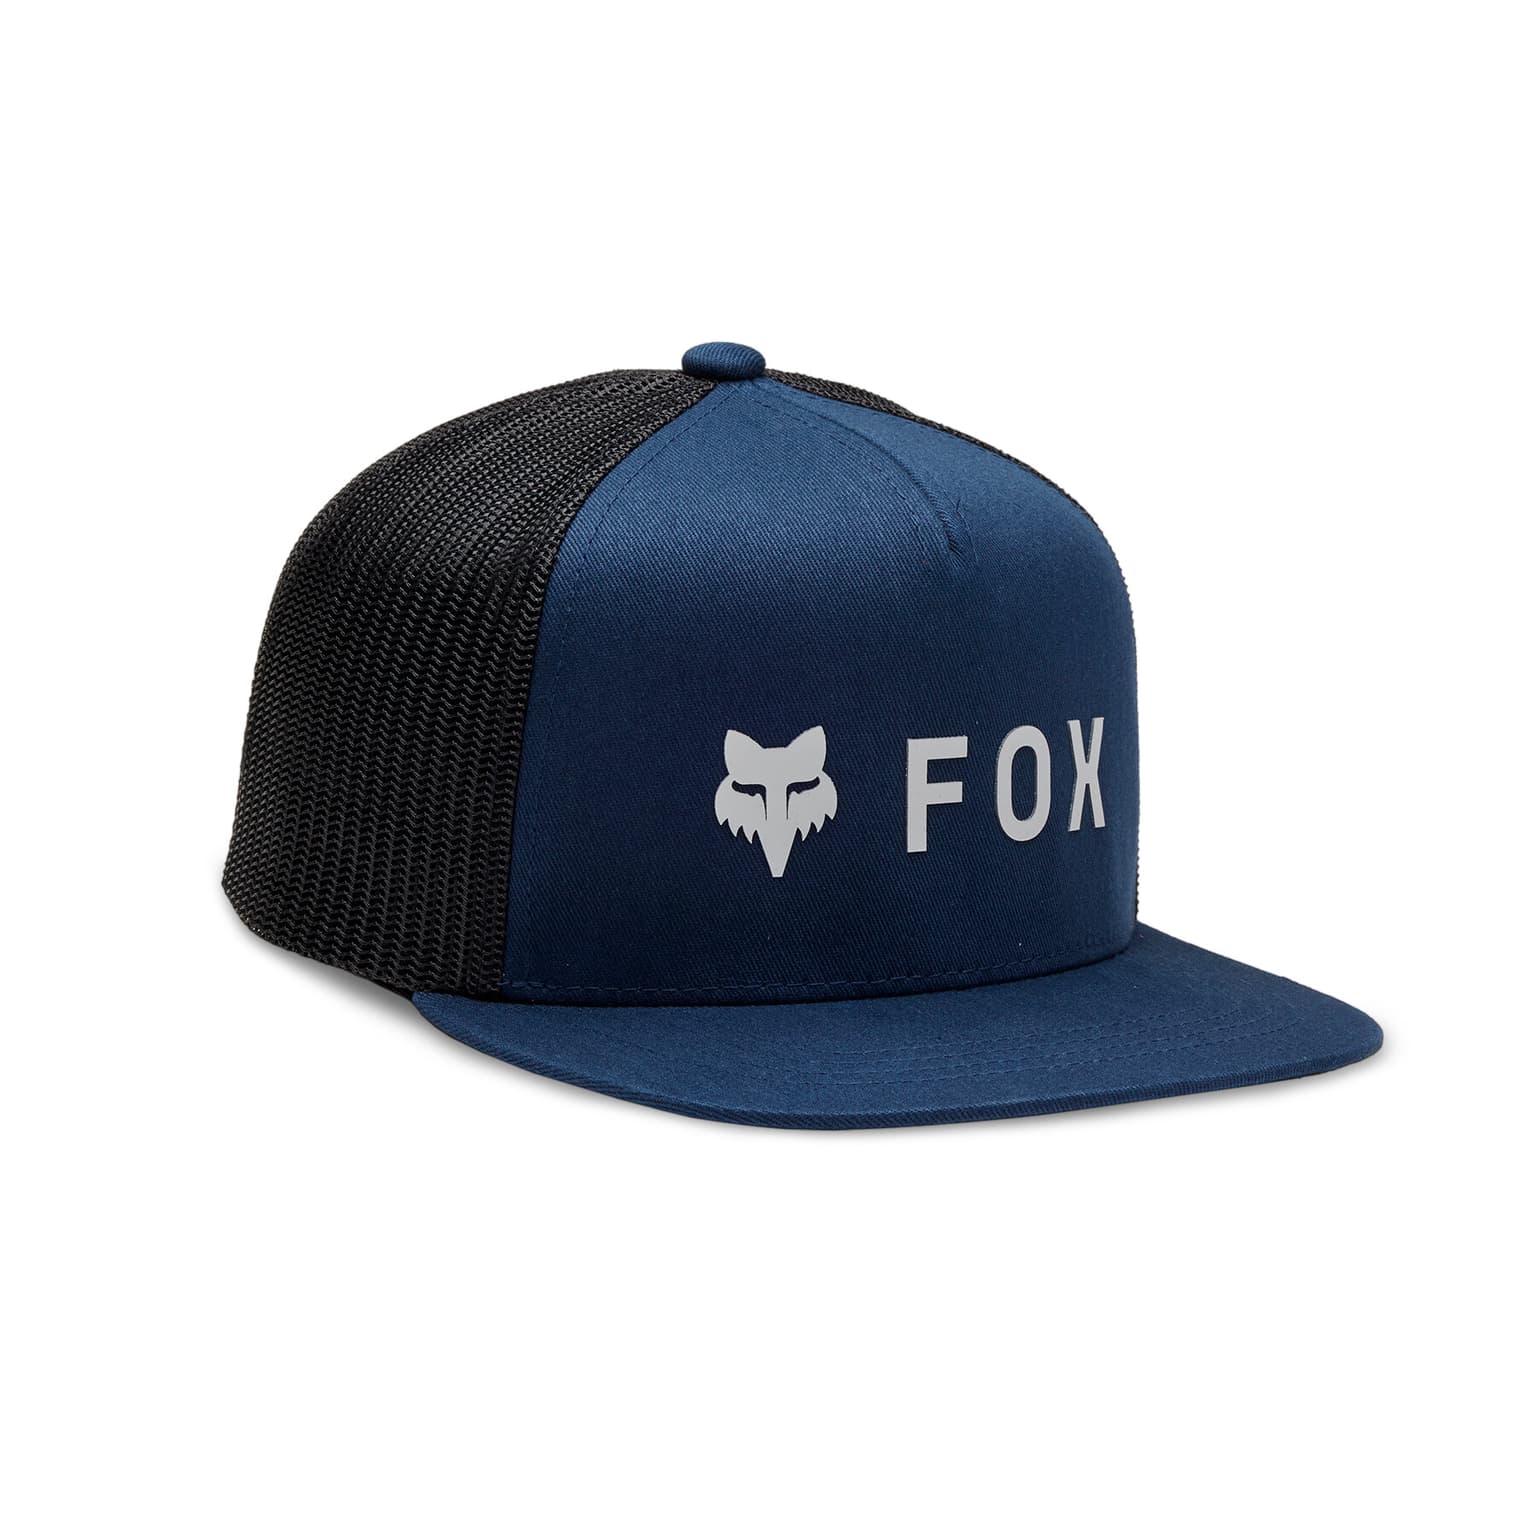 Fox Fox YOUTH ABSOLUTE SB MESH Cap dunkelblau 1